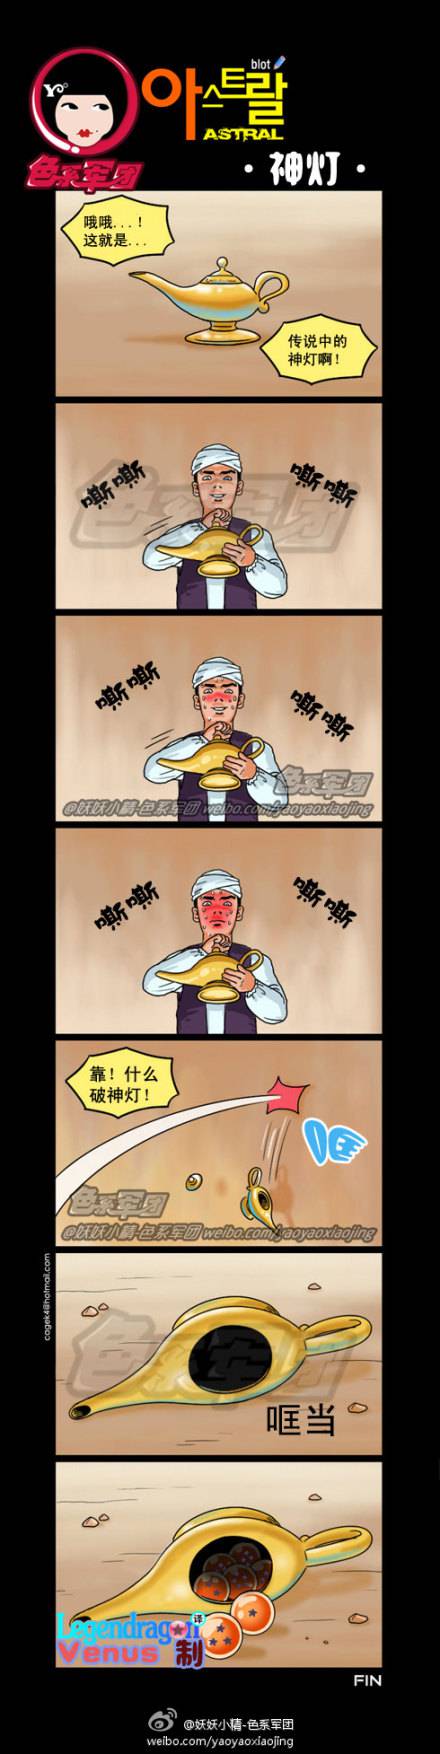 邪恶漫画爆笑囧图第47刊：牛奶